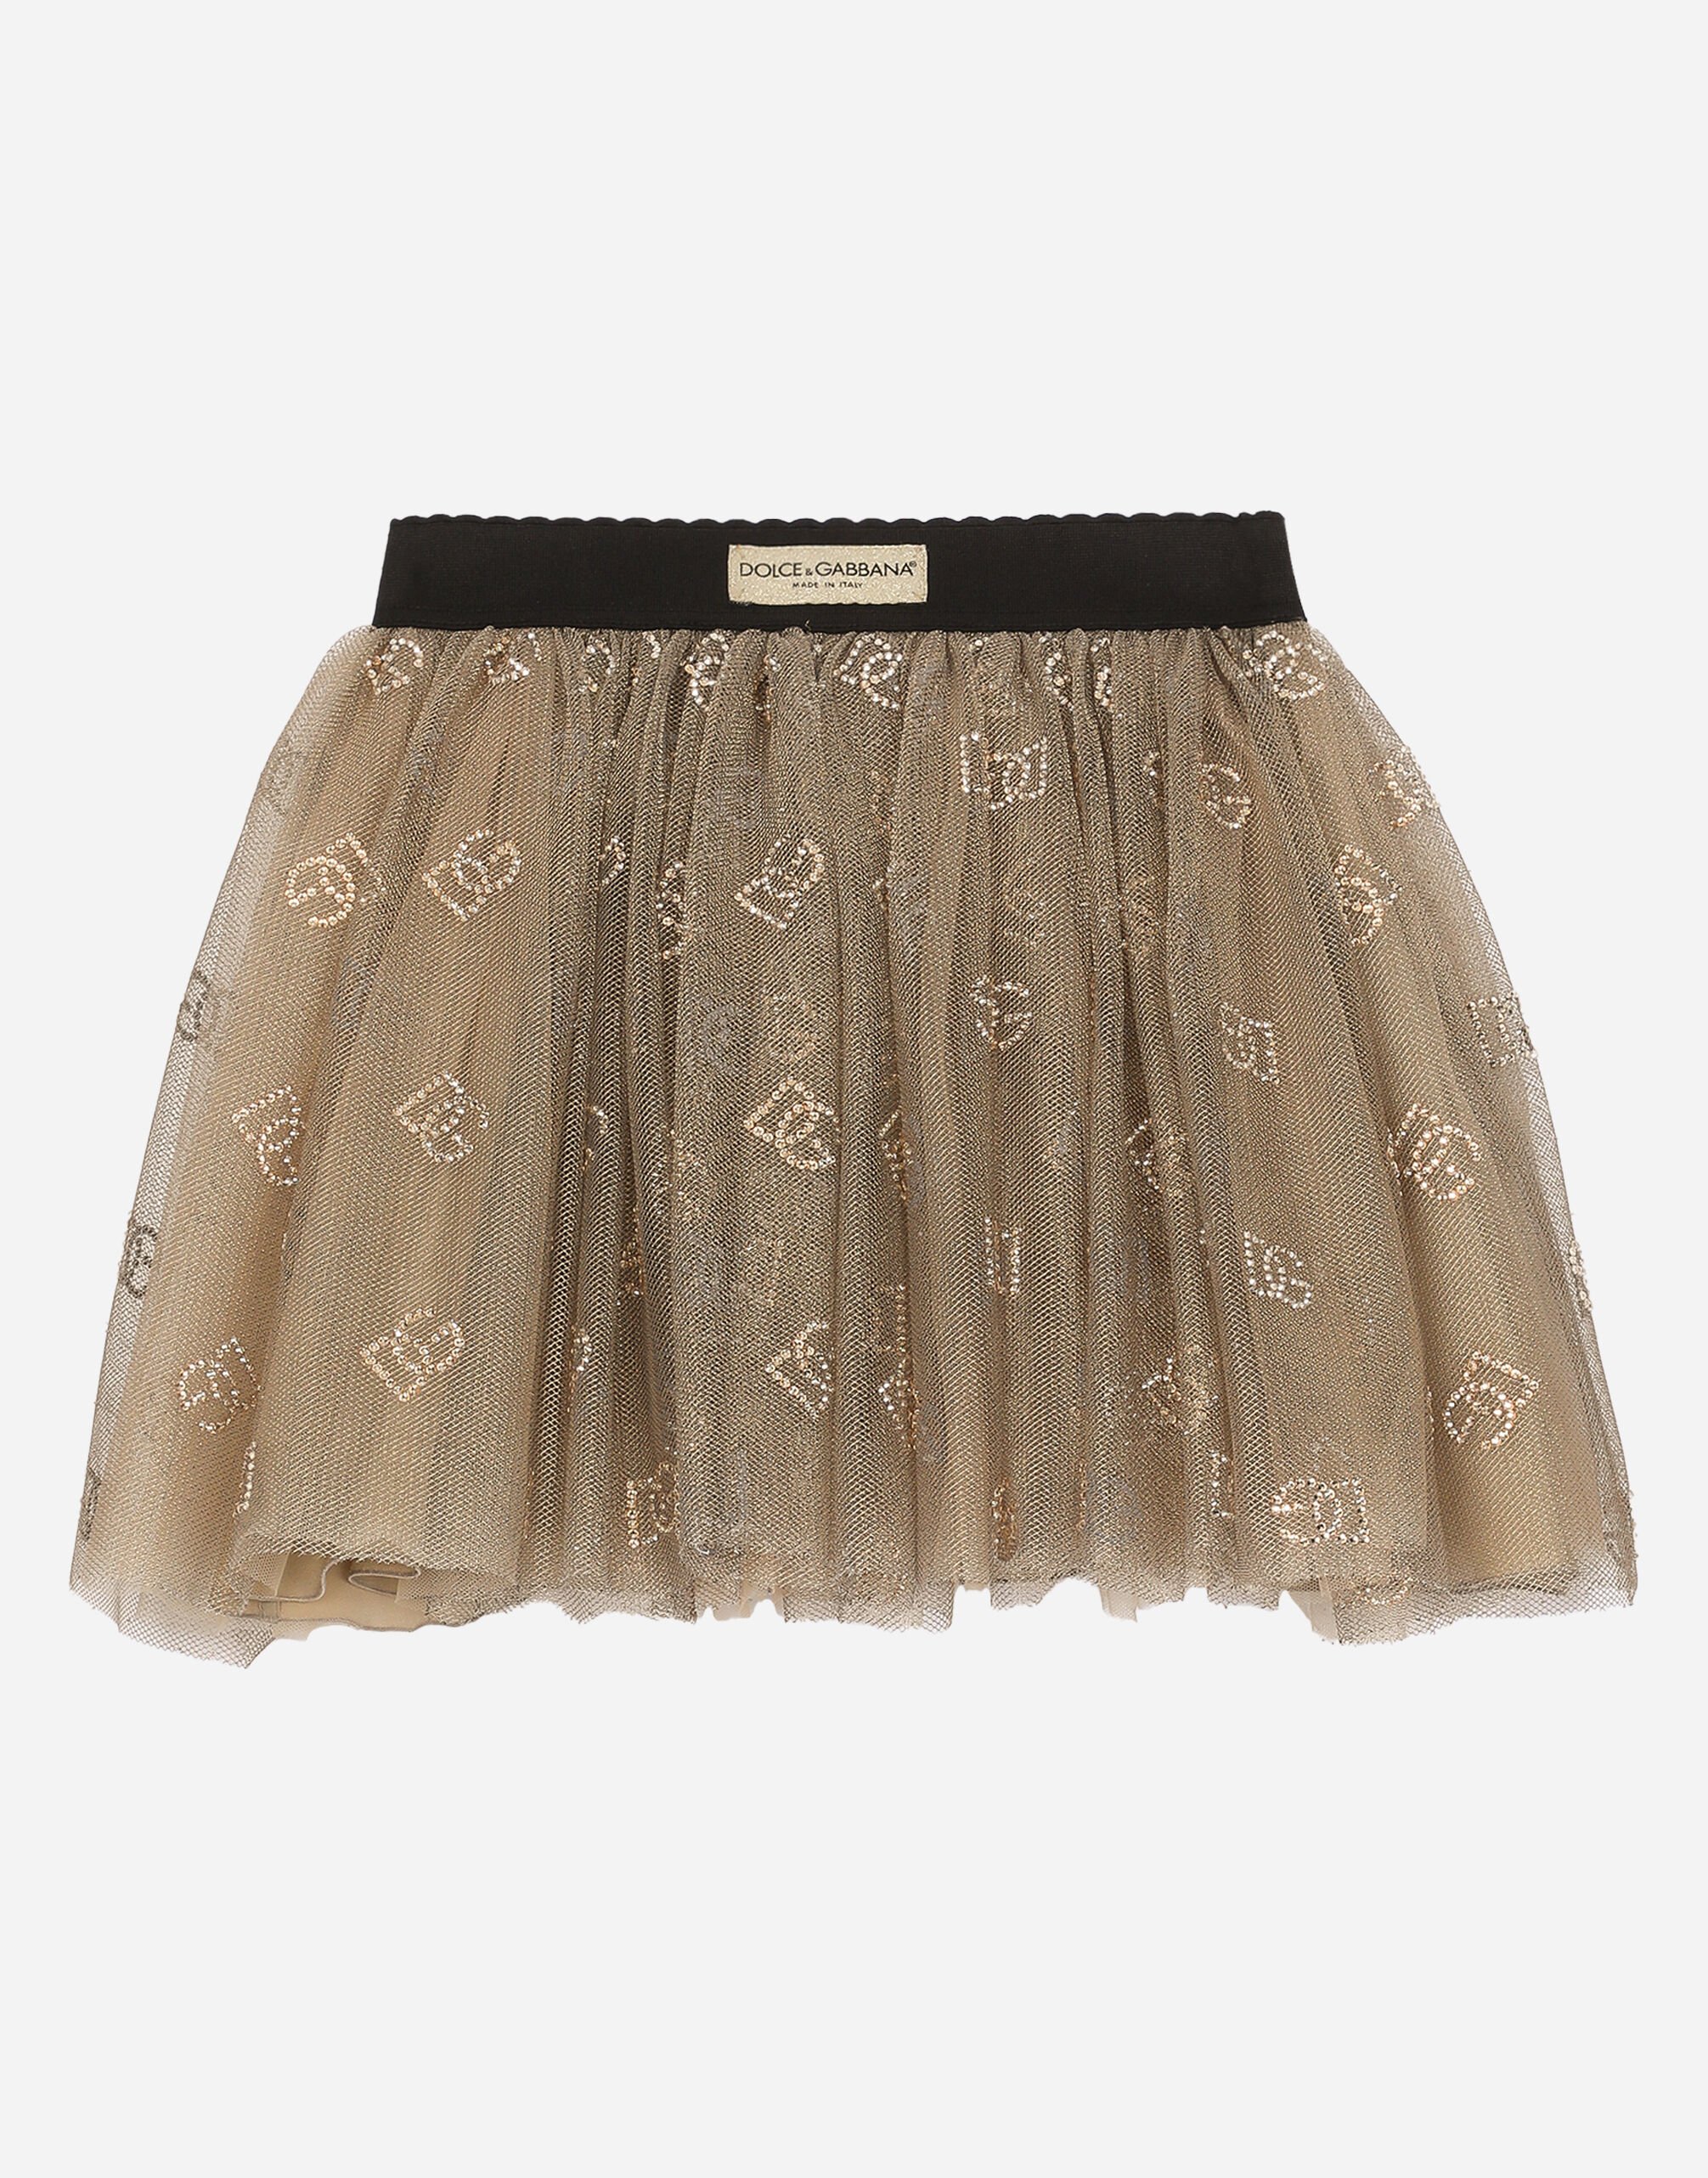 Dolce & Gabbana Tulle skirt with DG logo Gold L54I80G7K2T